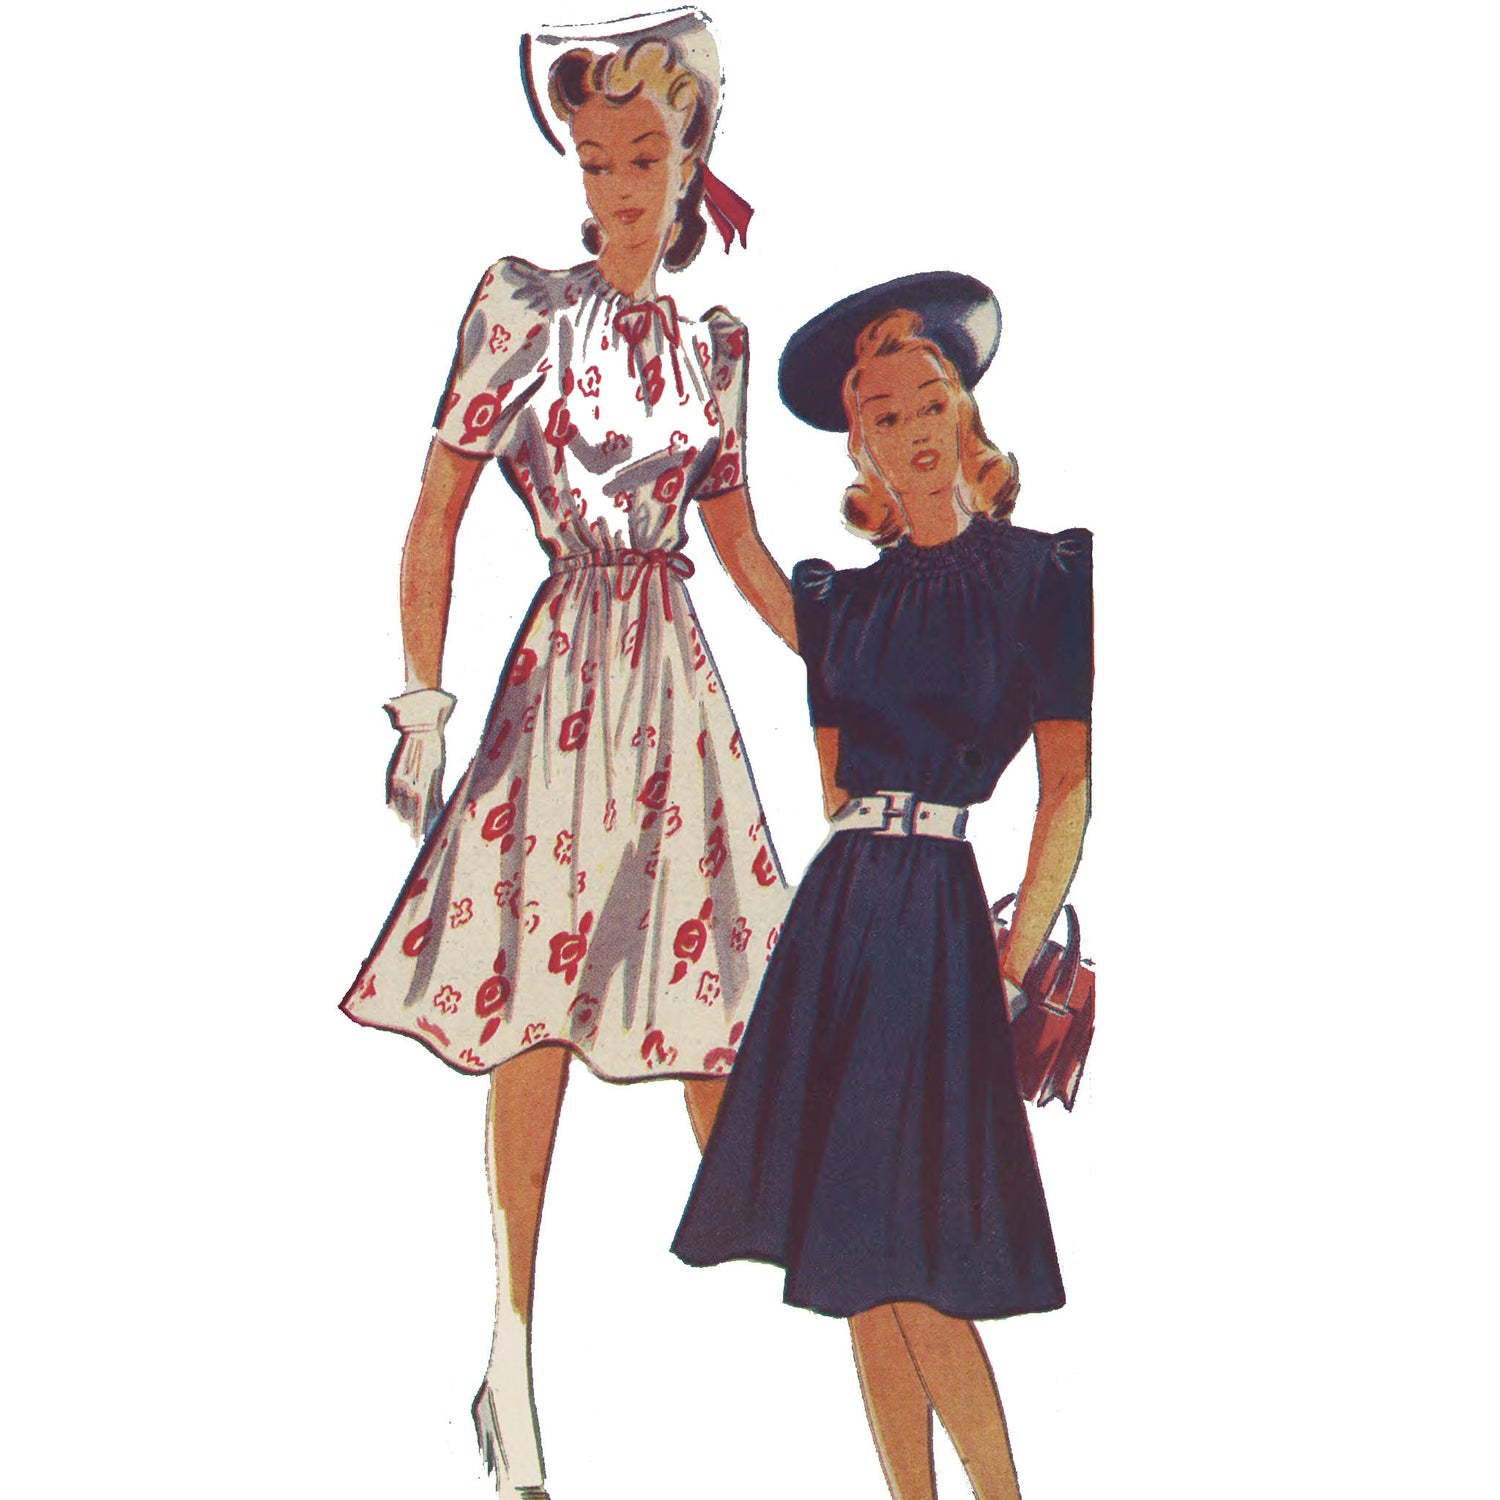 Women wearing 1940s dress